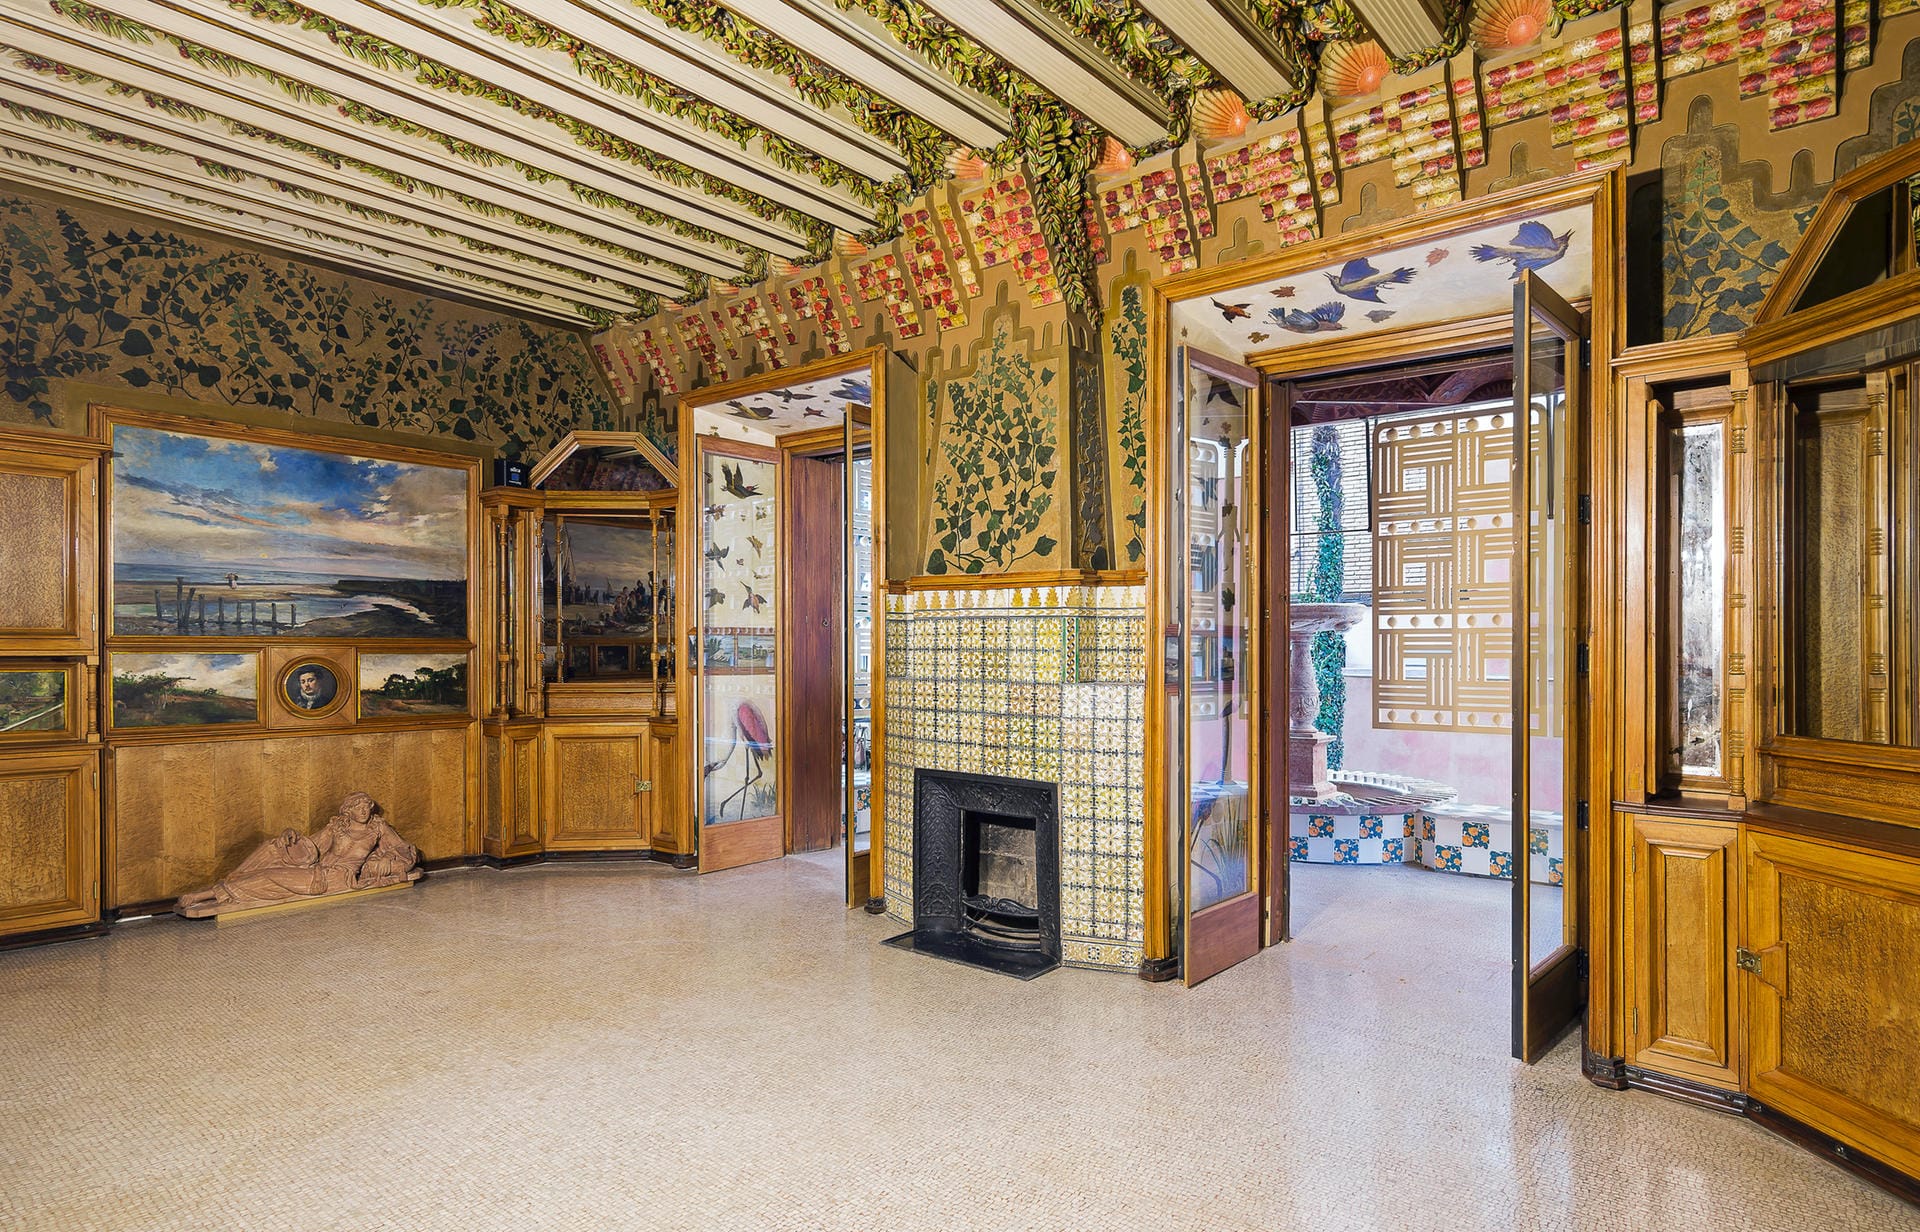 Prächtige Mosaike zieren den Innenraum des Casa Vicens.